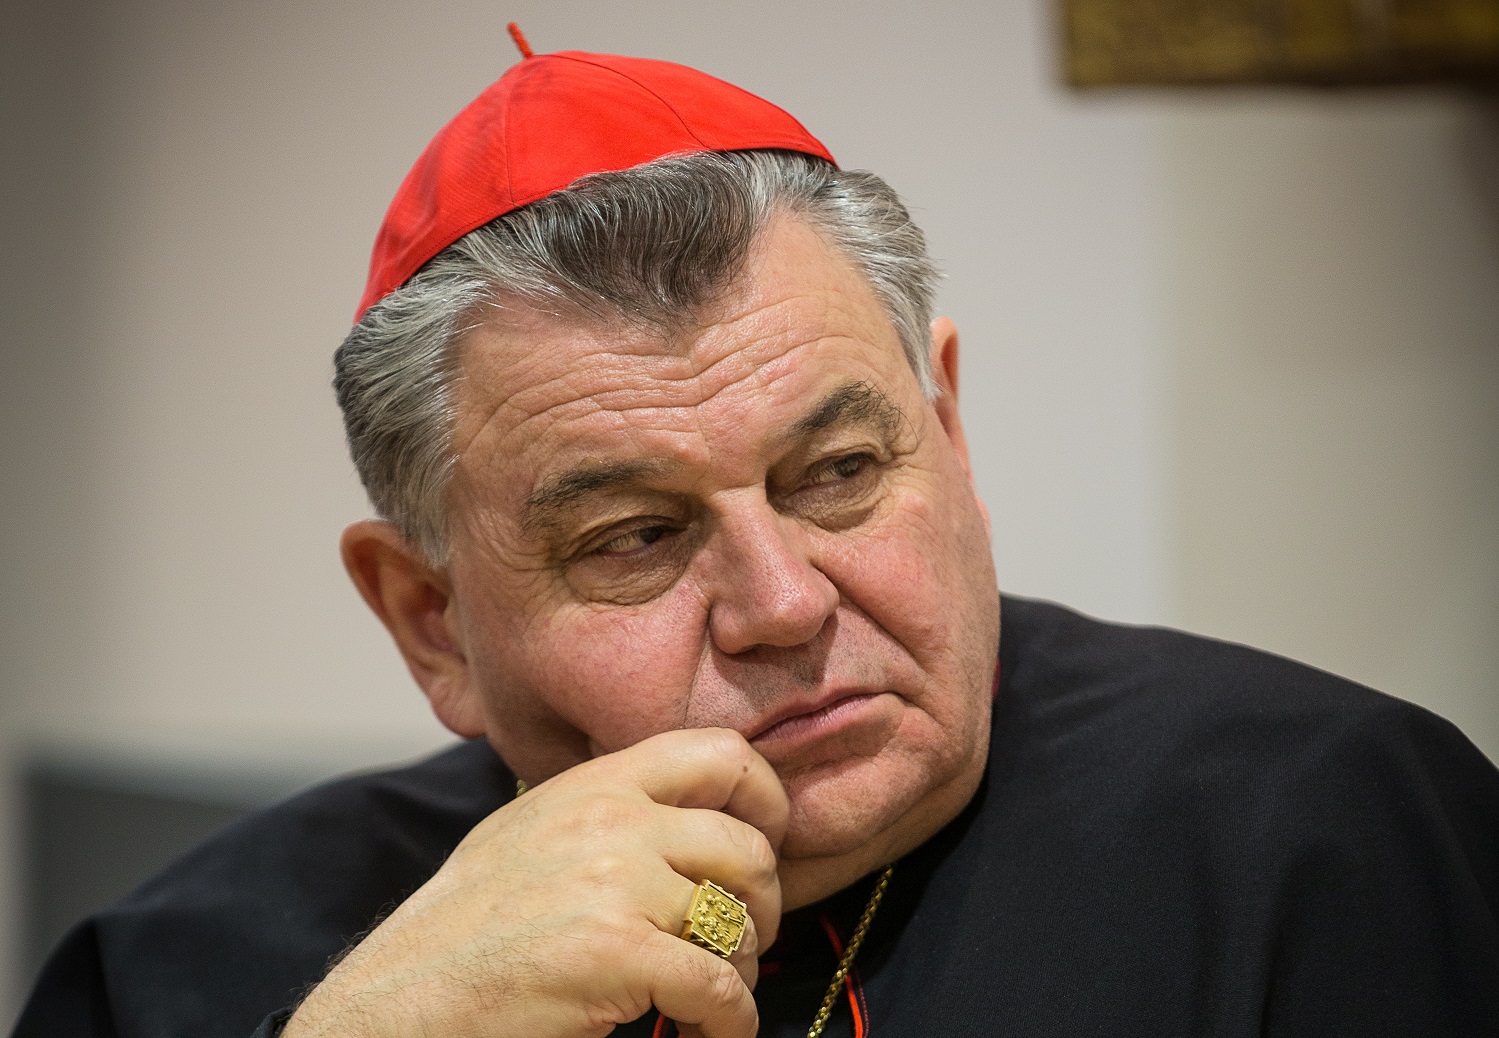 Чешский кардинал отмечает, что пандемический кризис вызвал приток народа в лоно Церкви